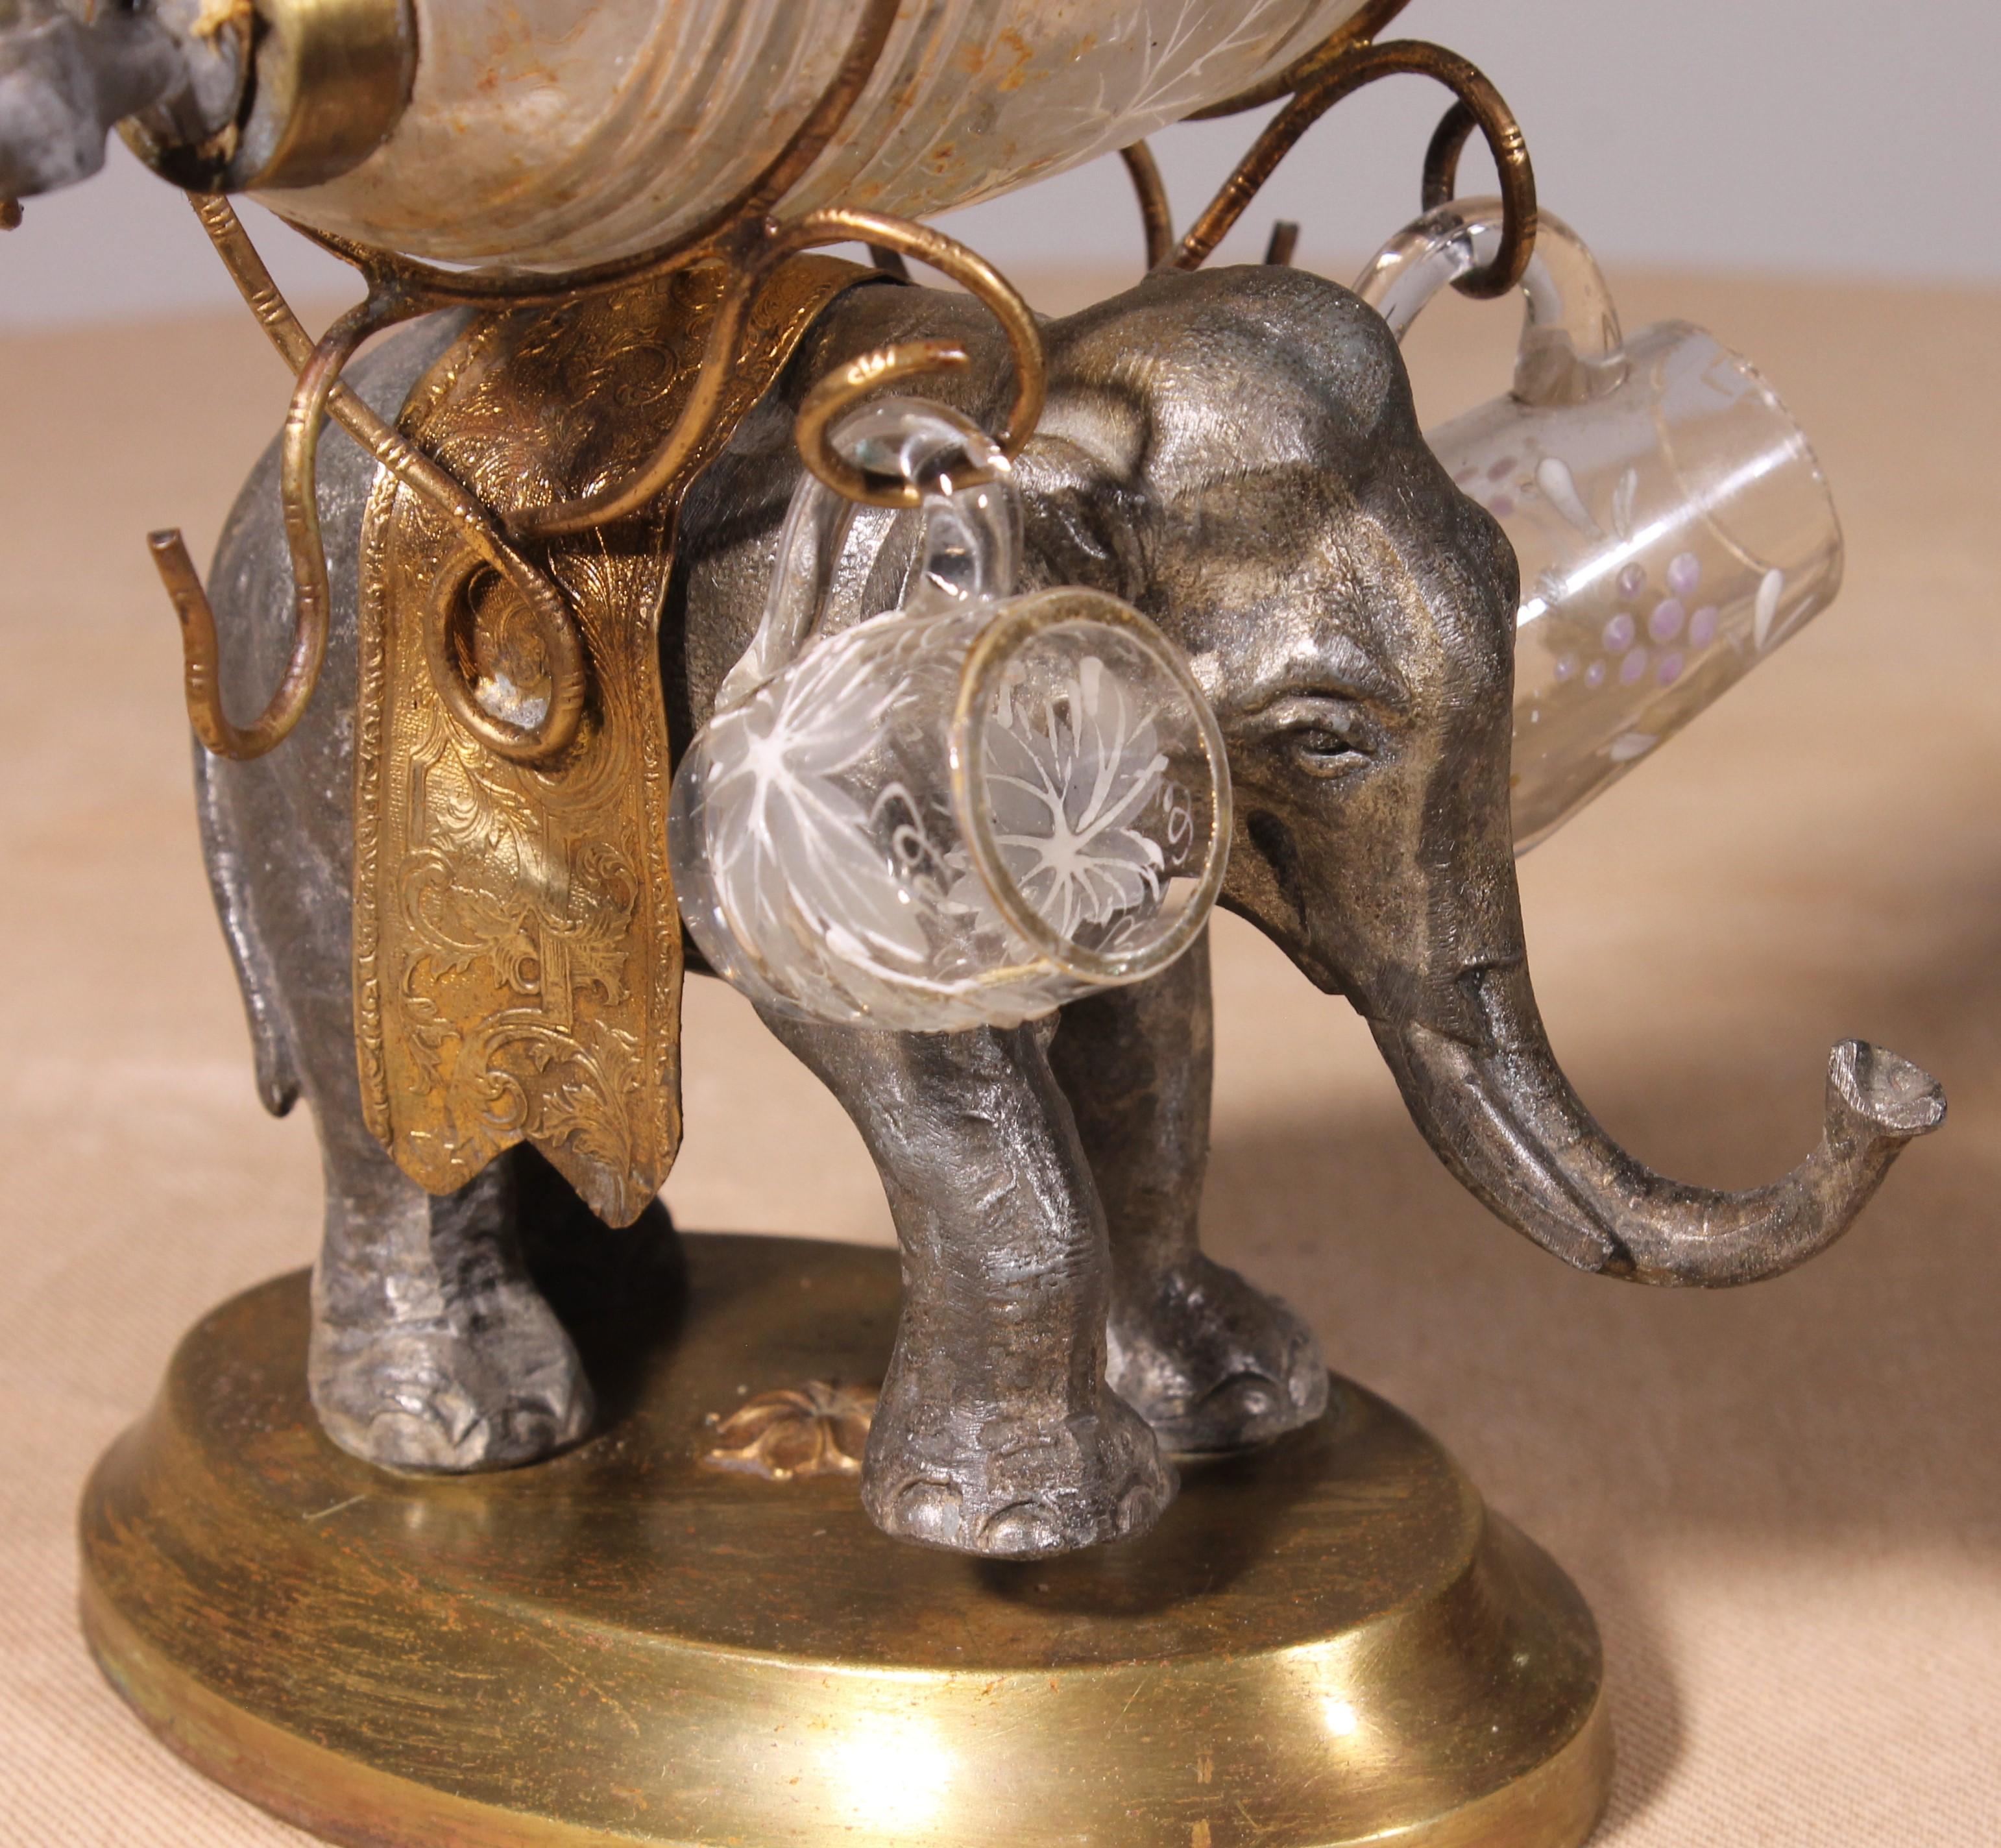 Cave à liqueur avec un éléphant en fer forgé, laiton et verre émaillé d'époque Napoléon III

Belle cave à liqueur avec un très bel éléphant décoré d'une cape en laiton ciselé

L'éléphant est surmonté d'un tonneau en verre décoré de raisins et de